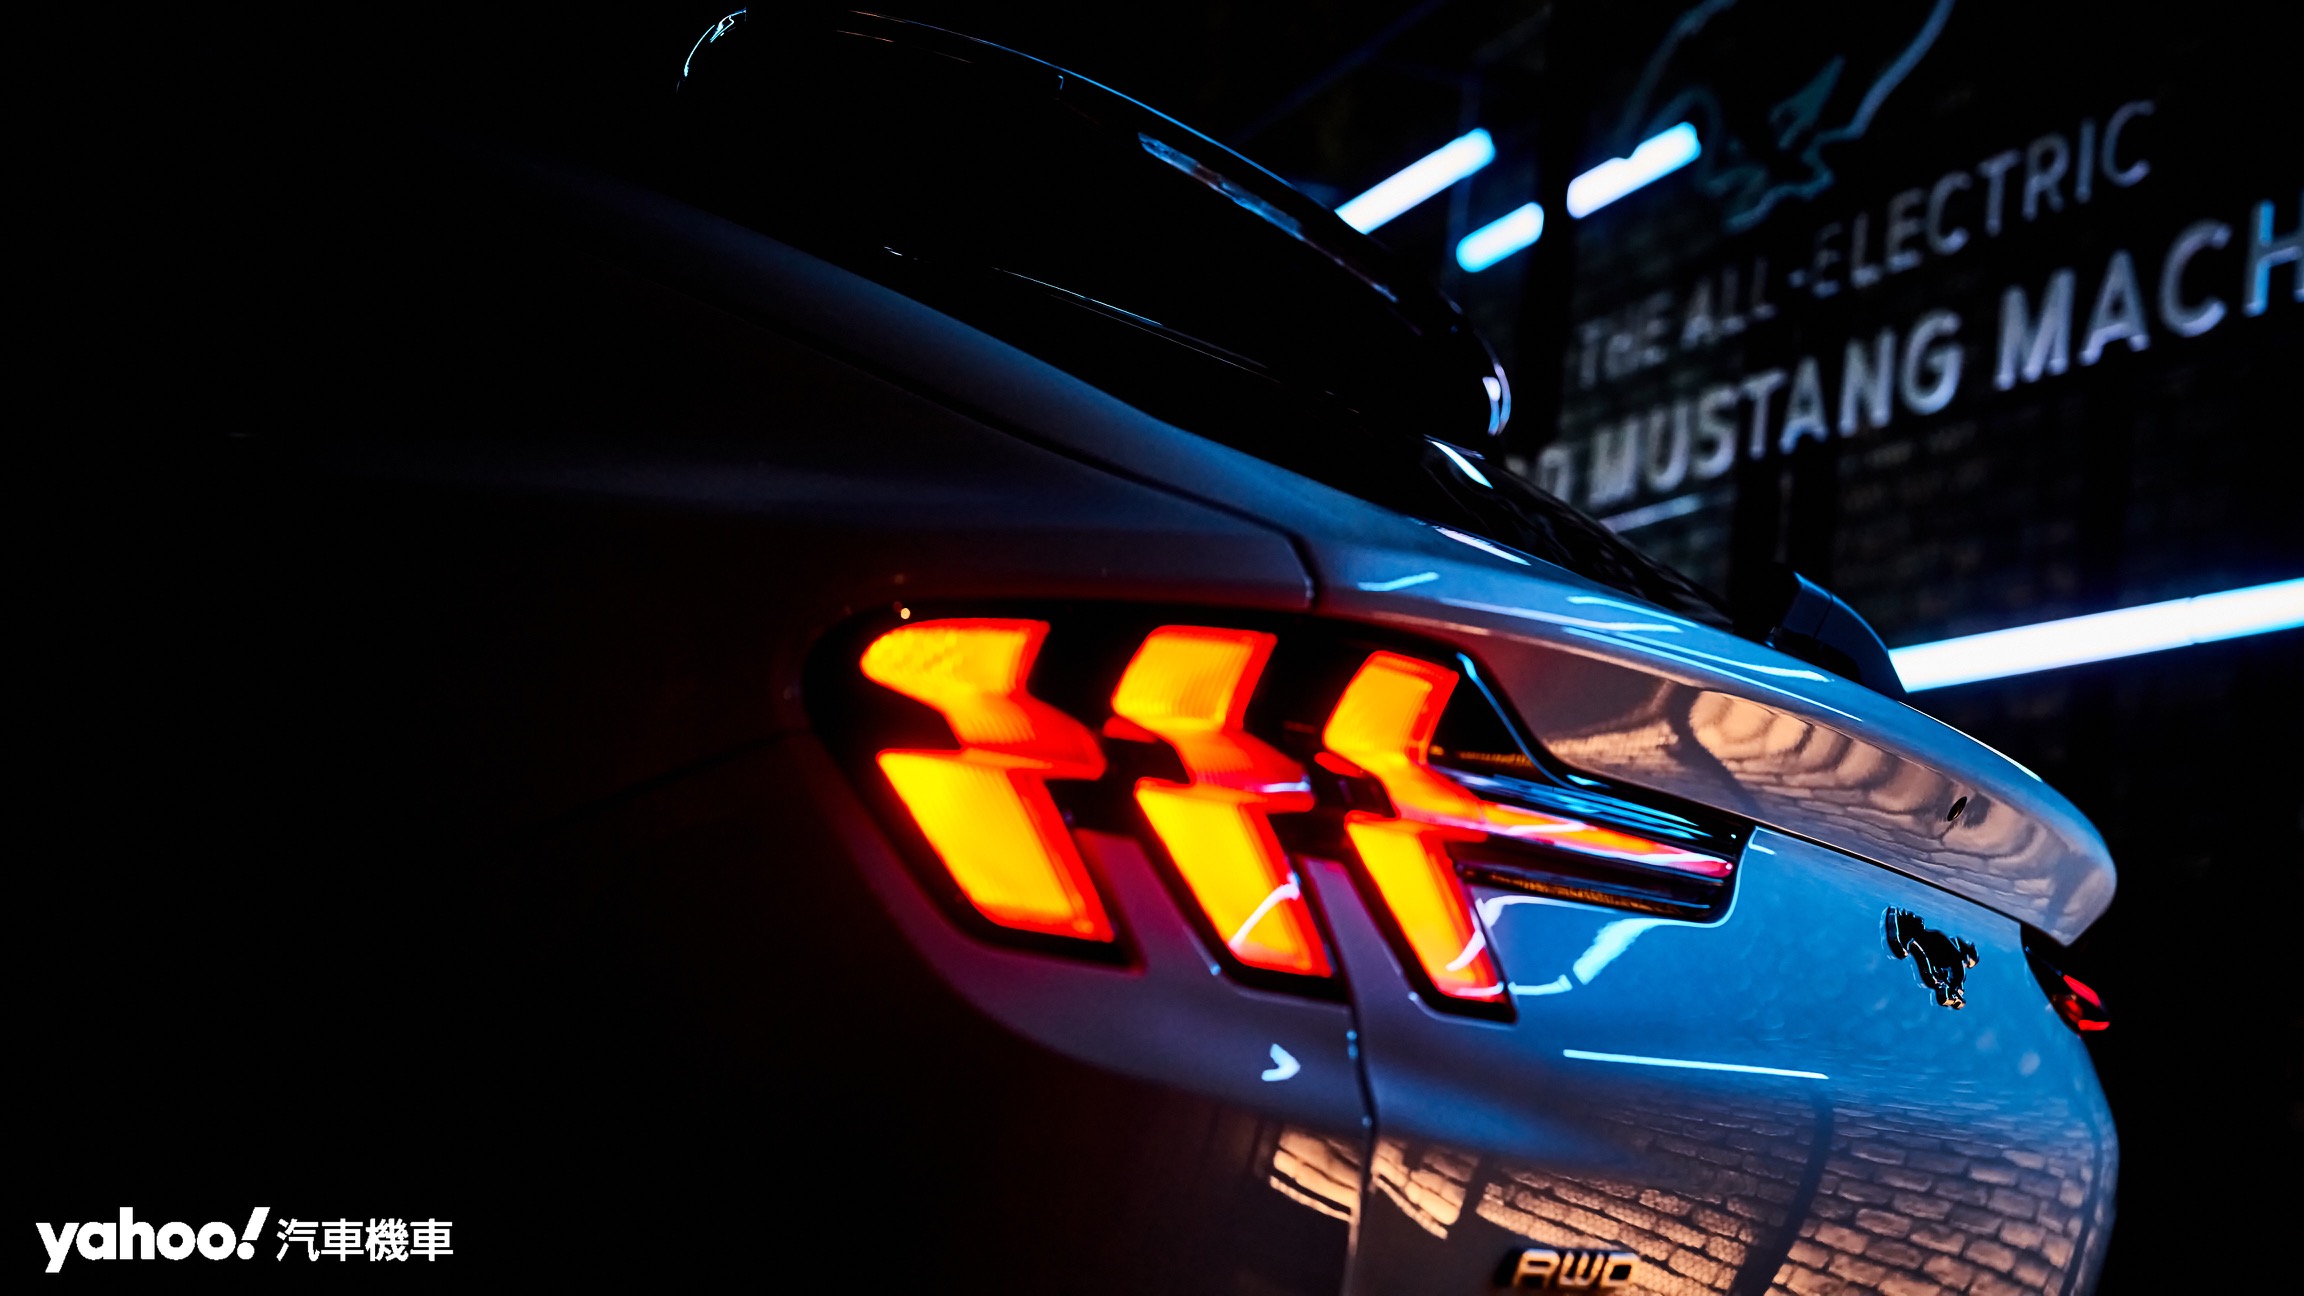 尾燈三格柵設計完美致敬現行Mustang車型並重現Mustang經典風格。